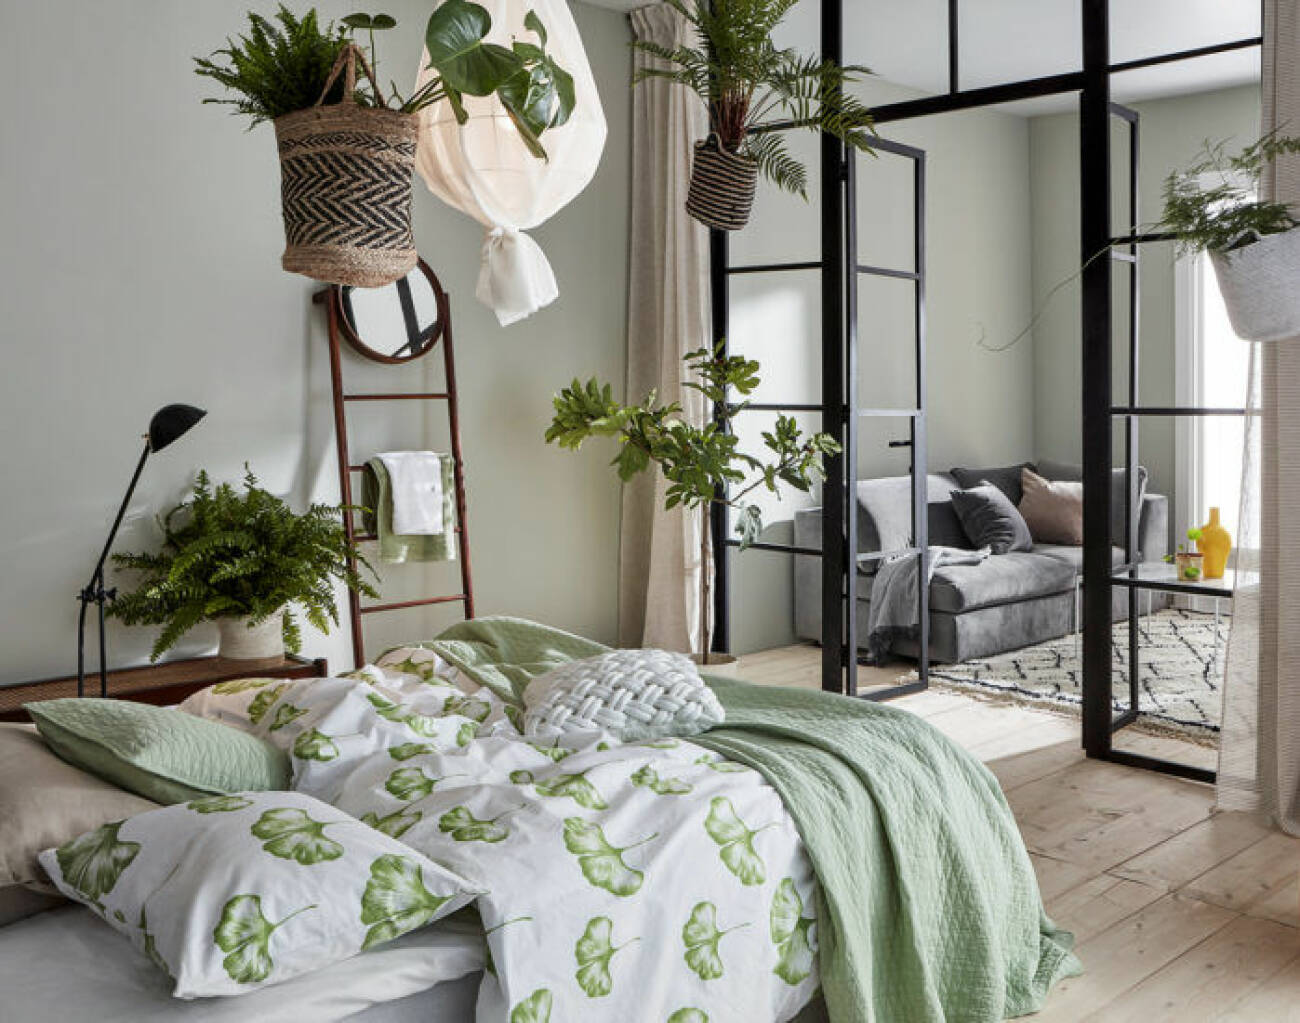 Sovrum med grönmönstrade sängkläder, växter i taket och glasvägg.